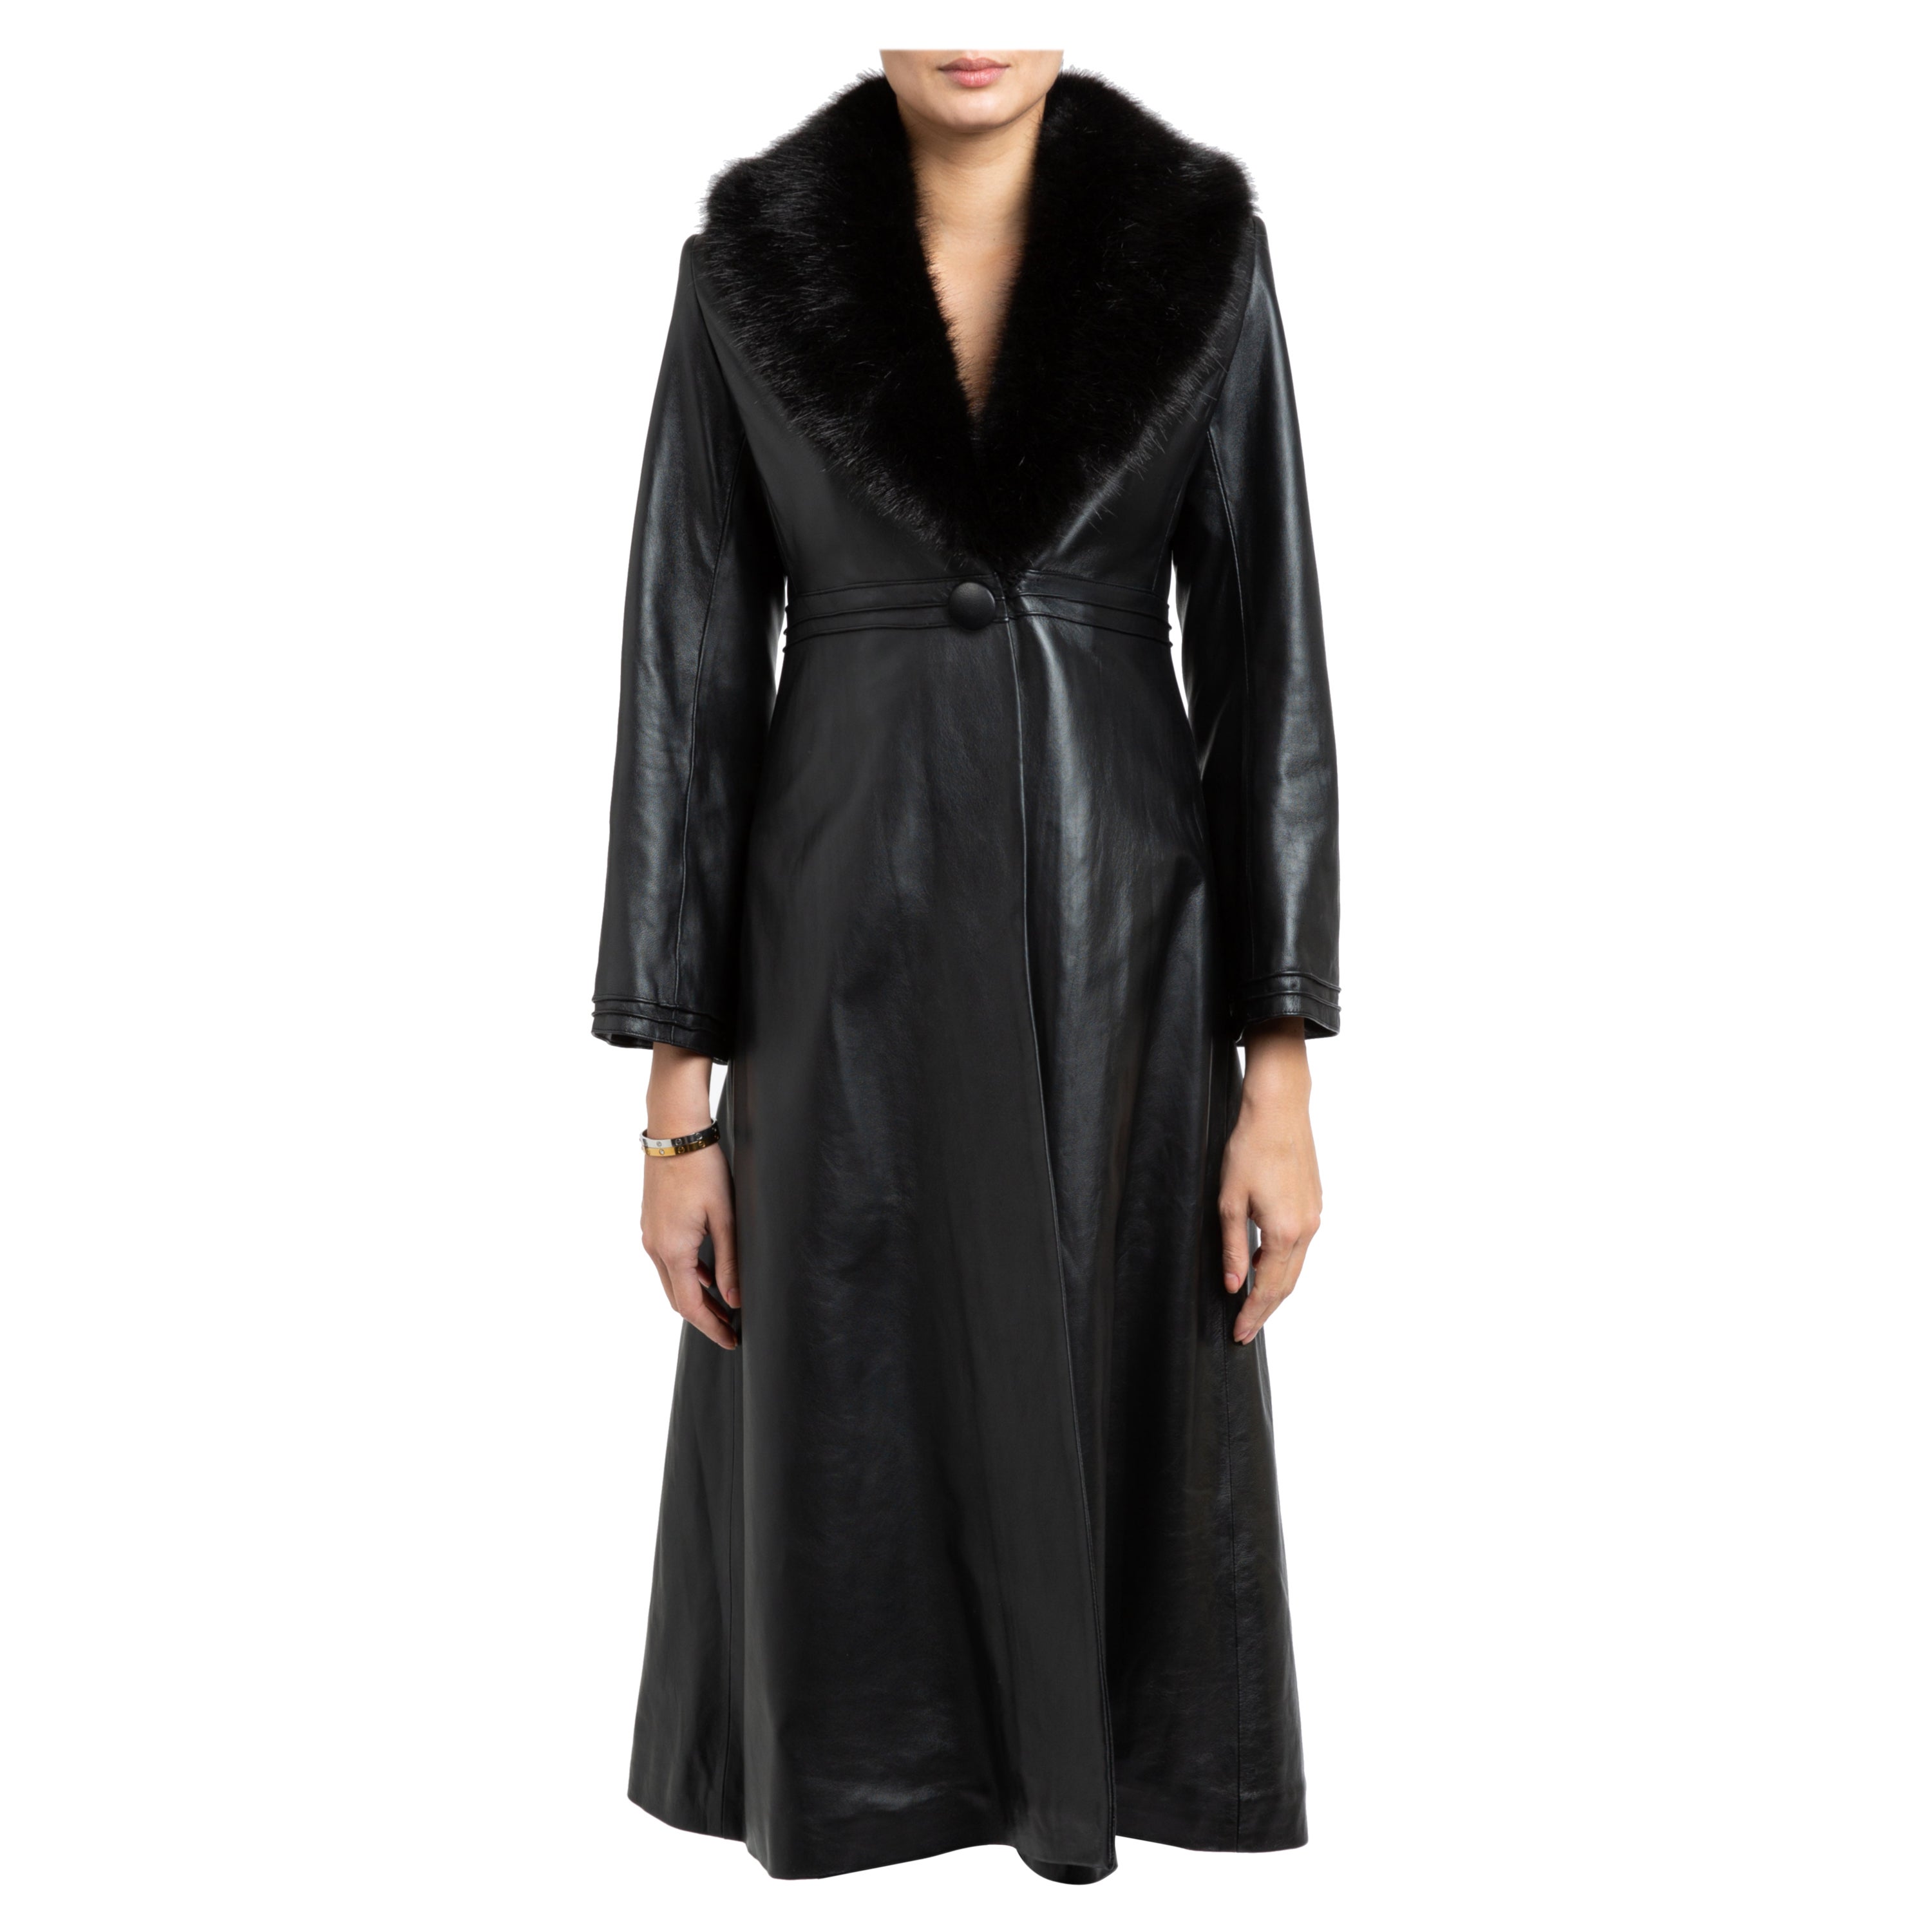 RomanticDesign Women's Long Lapel Faux Fur Jacket